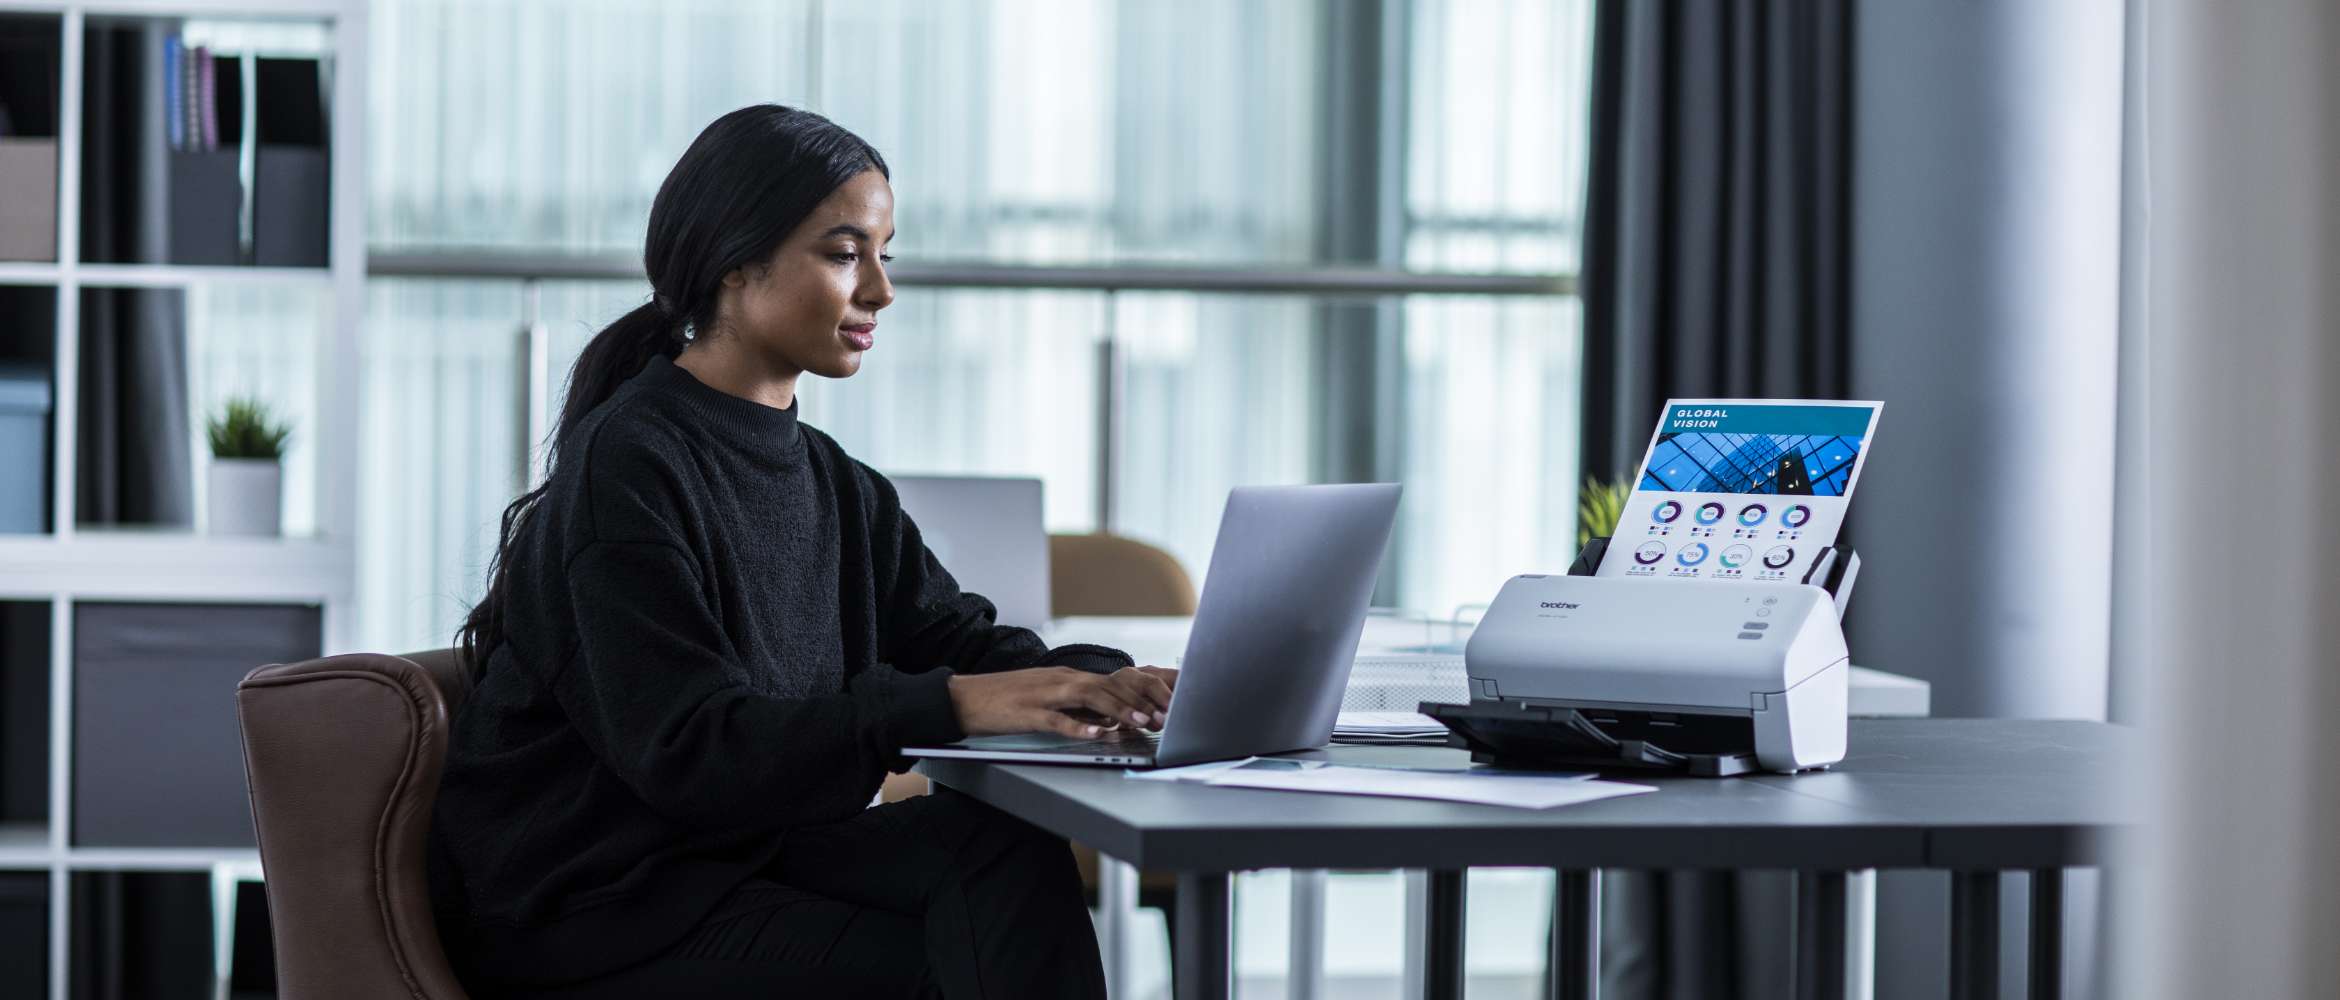 Femme assise à son bureau en train de numériser grâce à son scanner de documents Brother